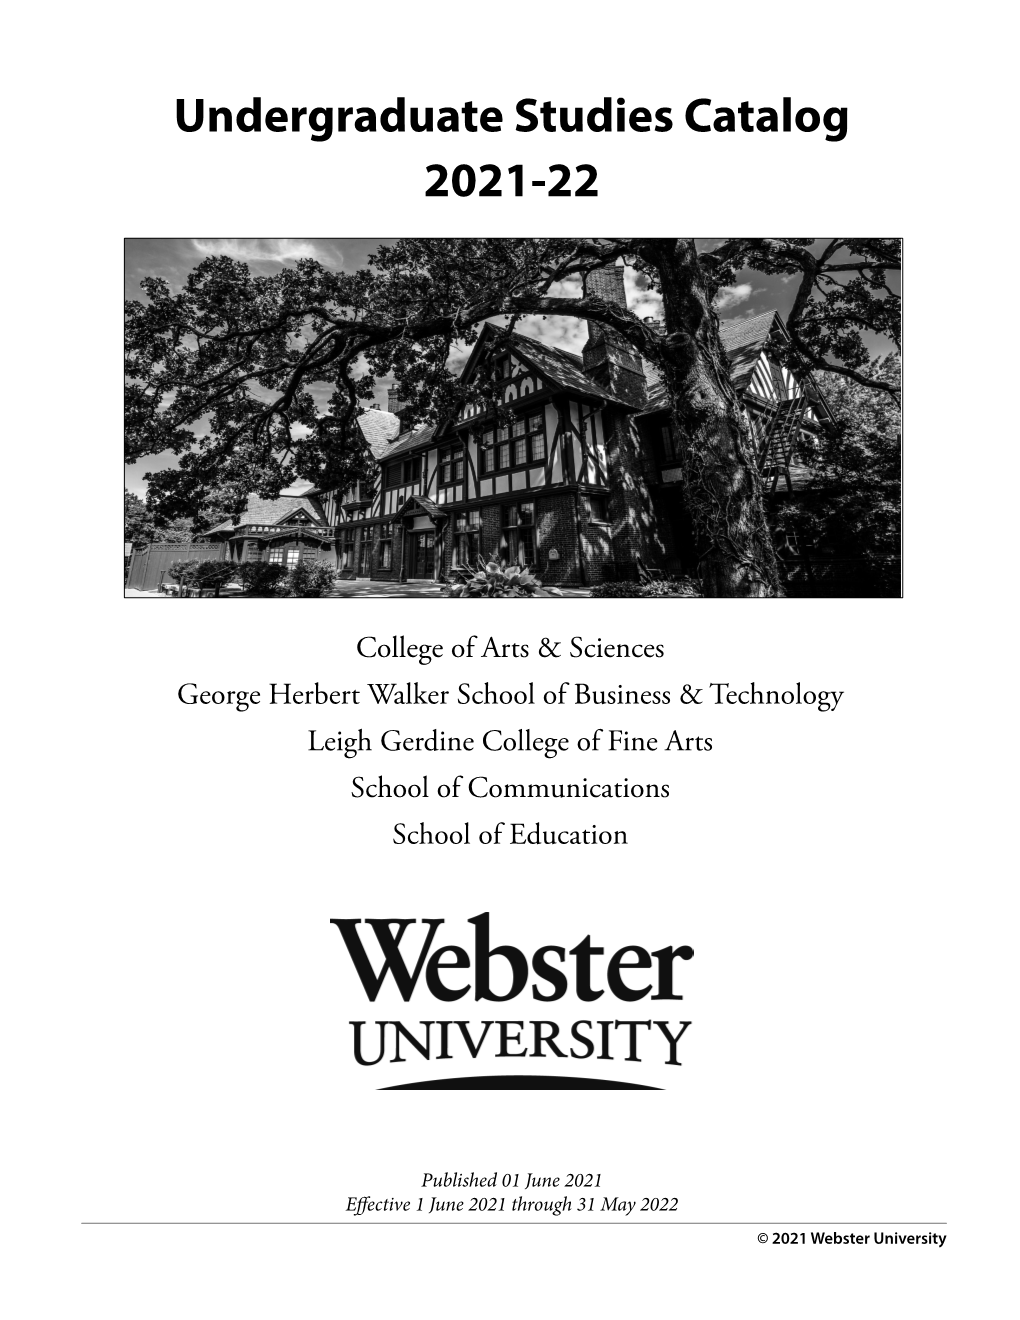 Undergraduate Studies Catalog 2021-22